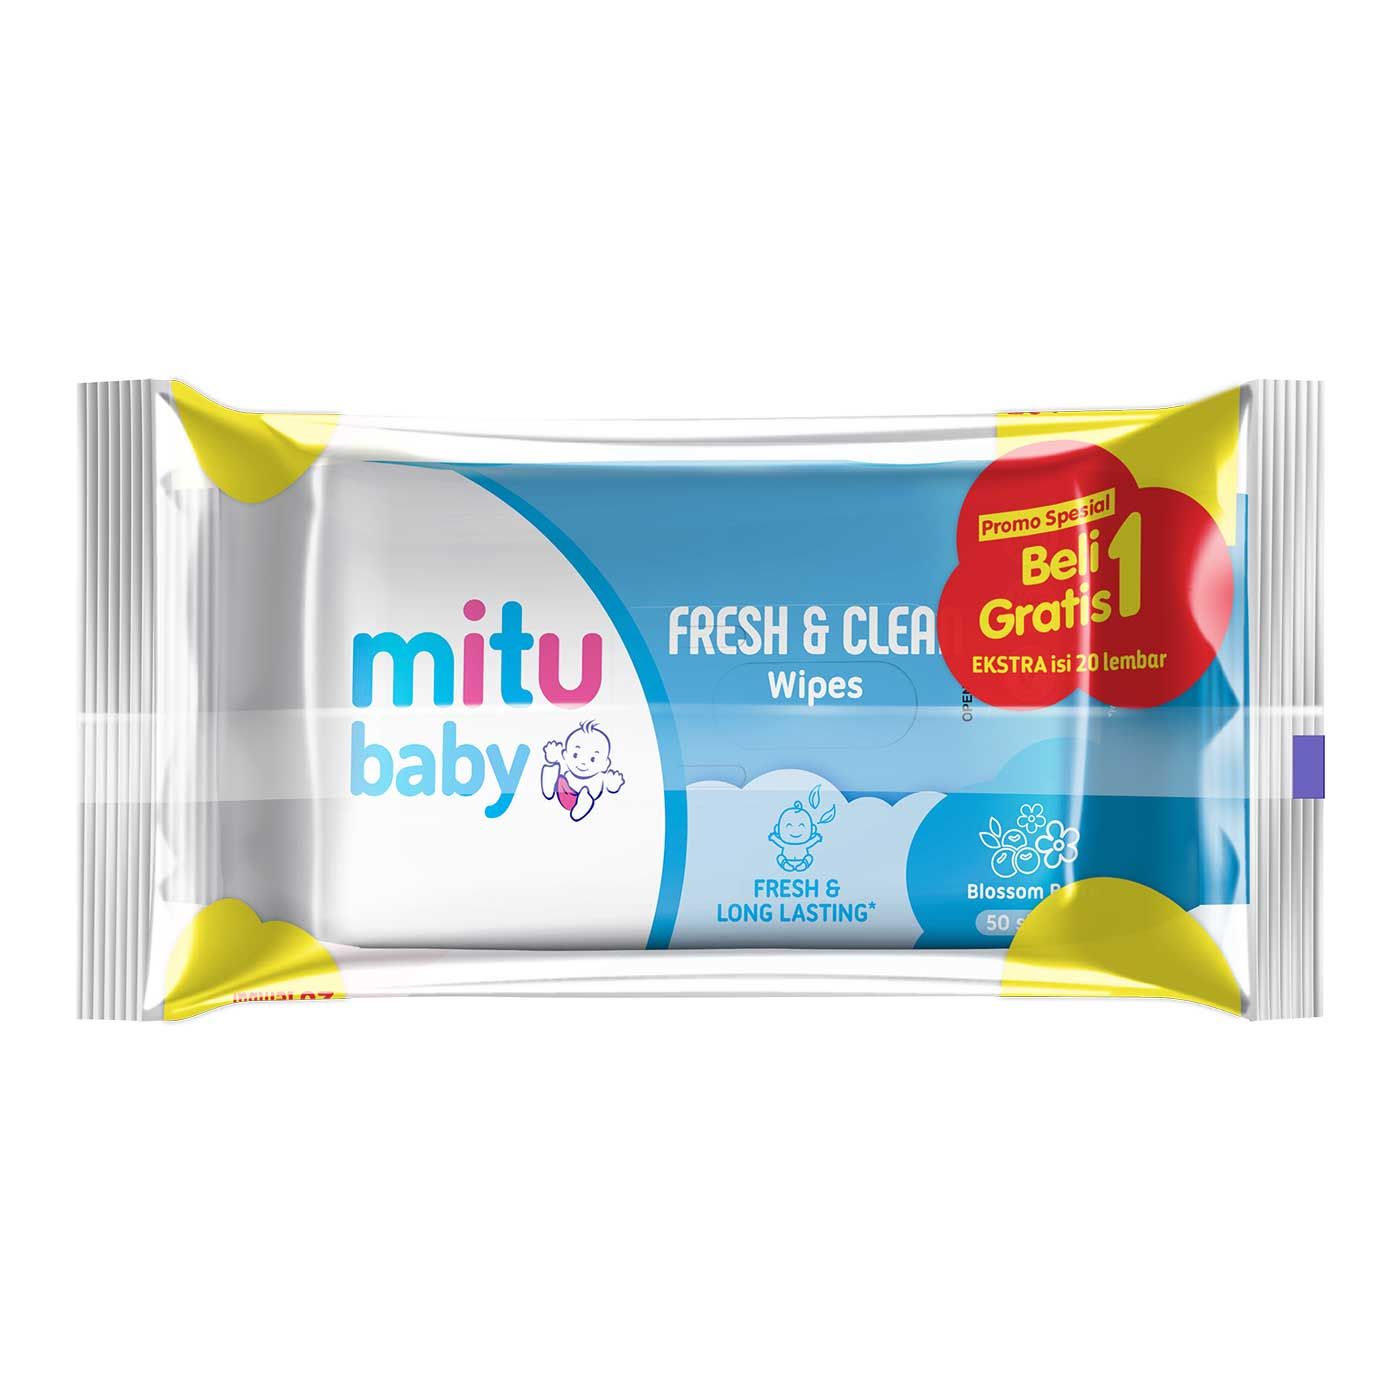 Mitu Baby Wipes Fresh n Clean Blue 40s Buy 1 Get 1 Extra 20s - 2